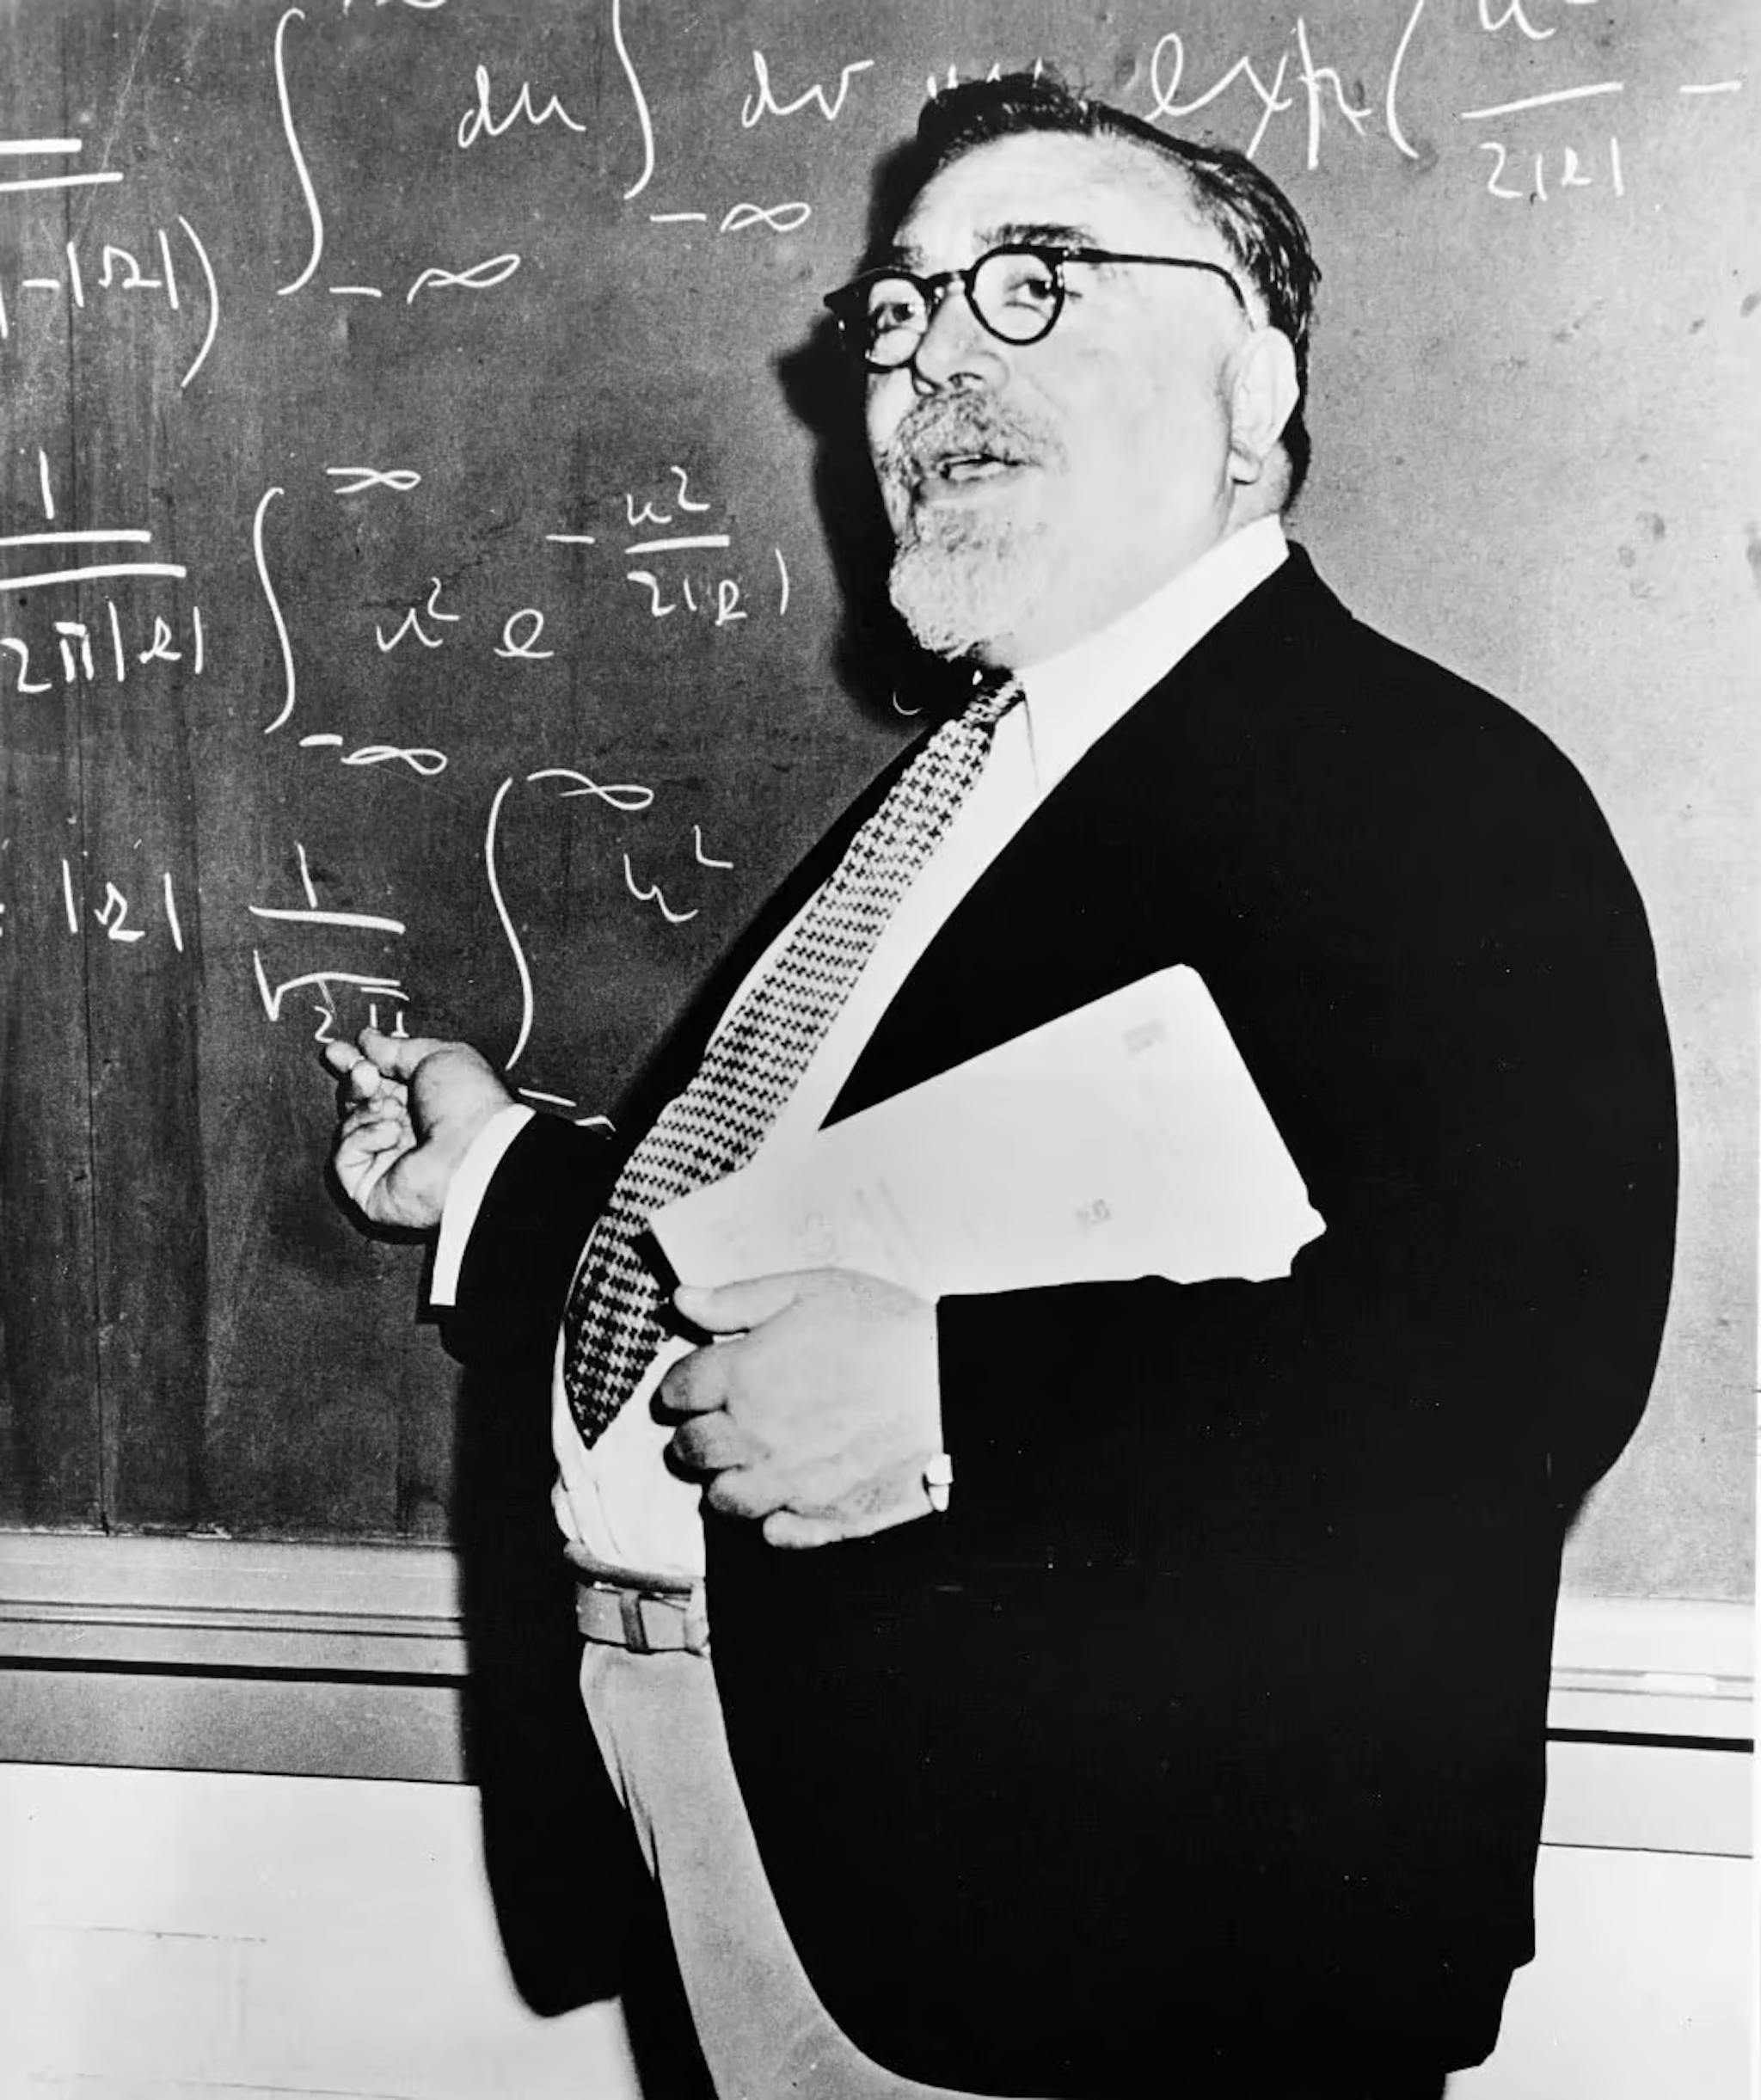 Norbert Wiener (1894-1964) hizo importantes contribuciones a los procesos estocásticos, la ingeniería electrónica y los sistemas de control. Él originó la cibernética y teorizó que los mecanismos de retroalimentación conducen a un comportamiento inteligente, sentando las bases para la IA moderna.